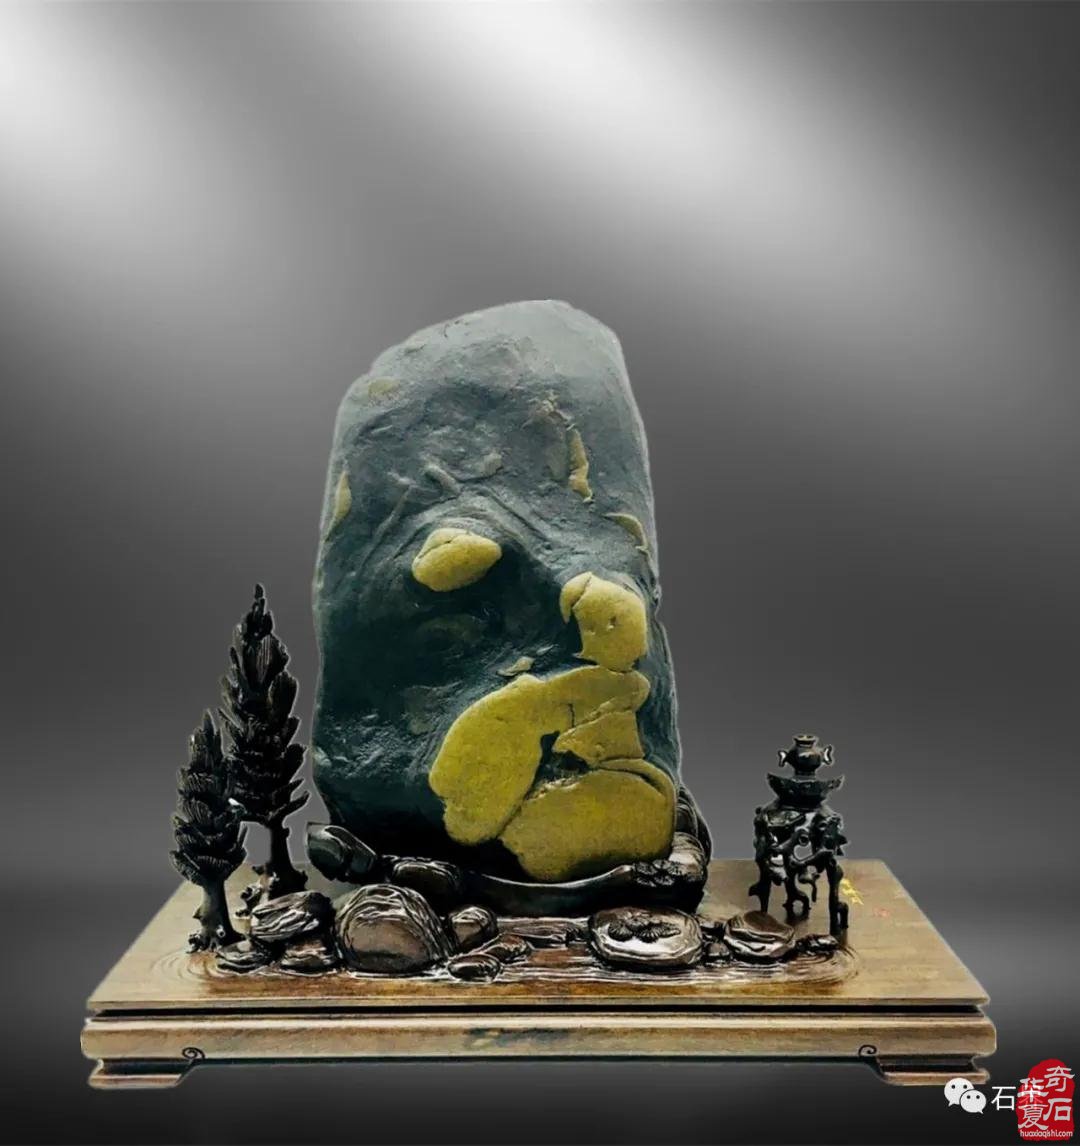 中国观赏石协会创会会长寿嘉华一行黄山奇石博物馆考察调研